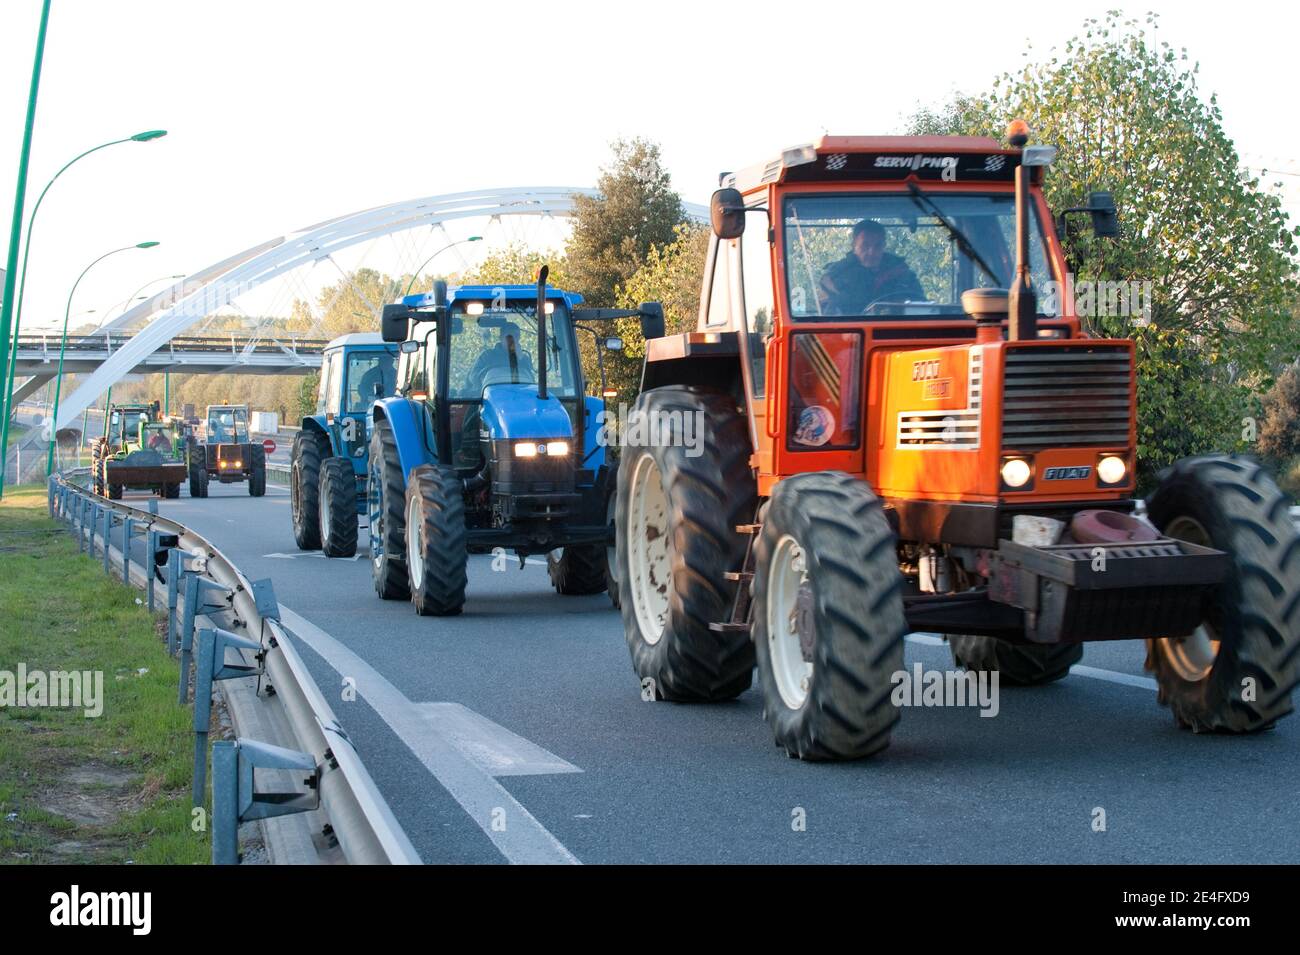 Manifestation des Agriculteurs qui sont alles avec leurs tracteurs sur la rocade a Toulouse, France le 16 Octobre 2009. Foto Fred Lancelot/ABACAPRESS.COM Stockfoto